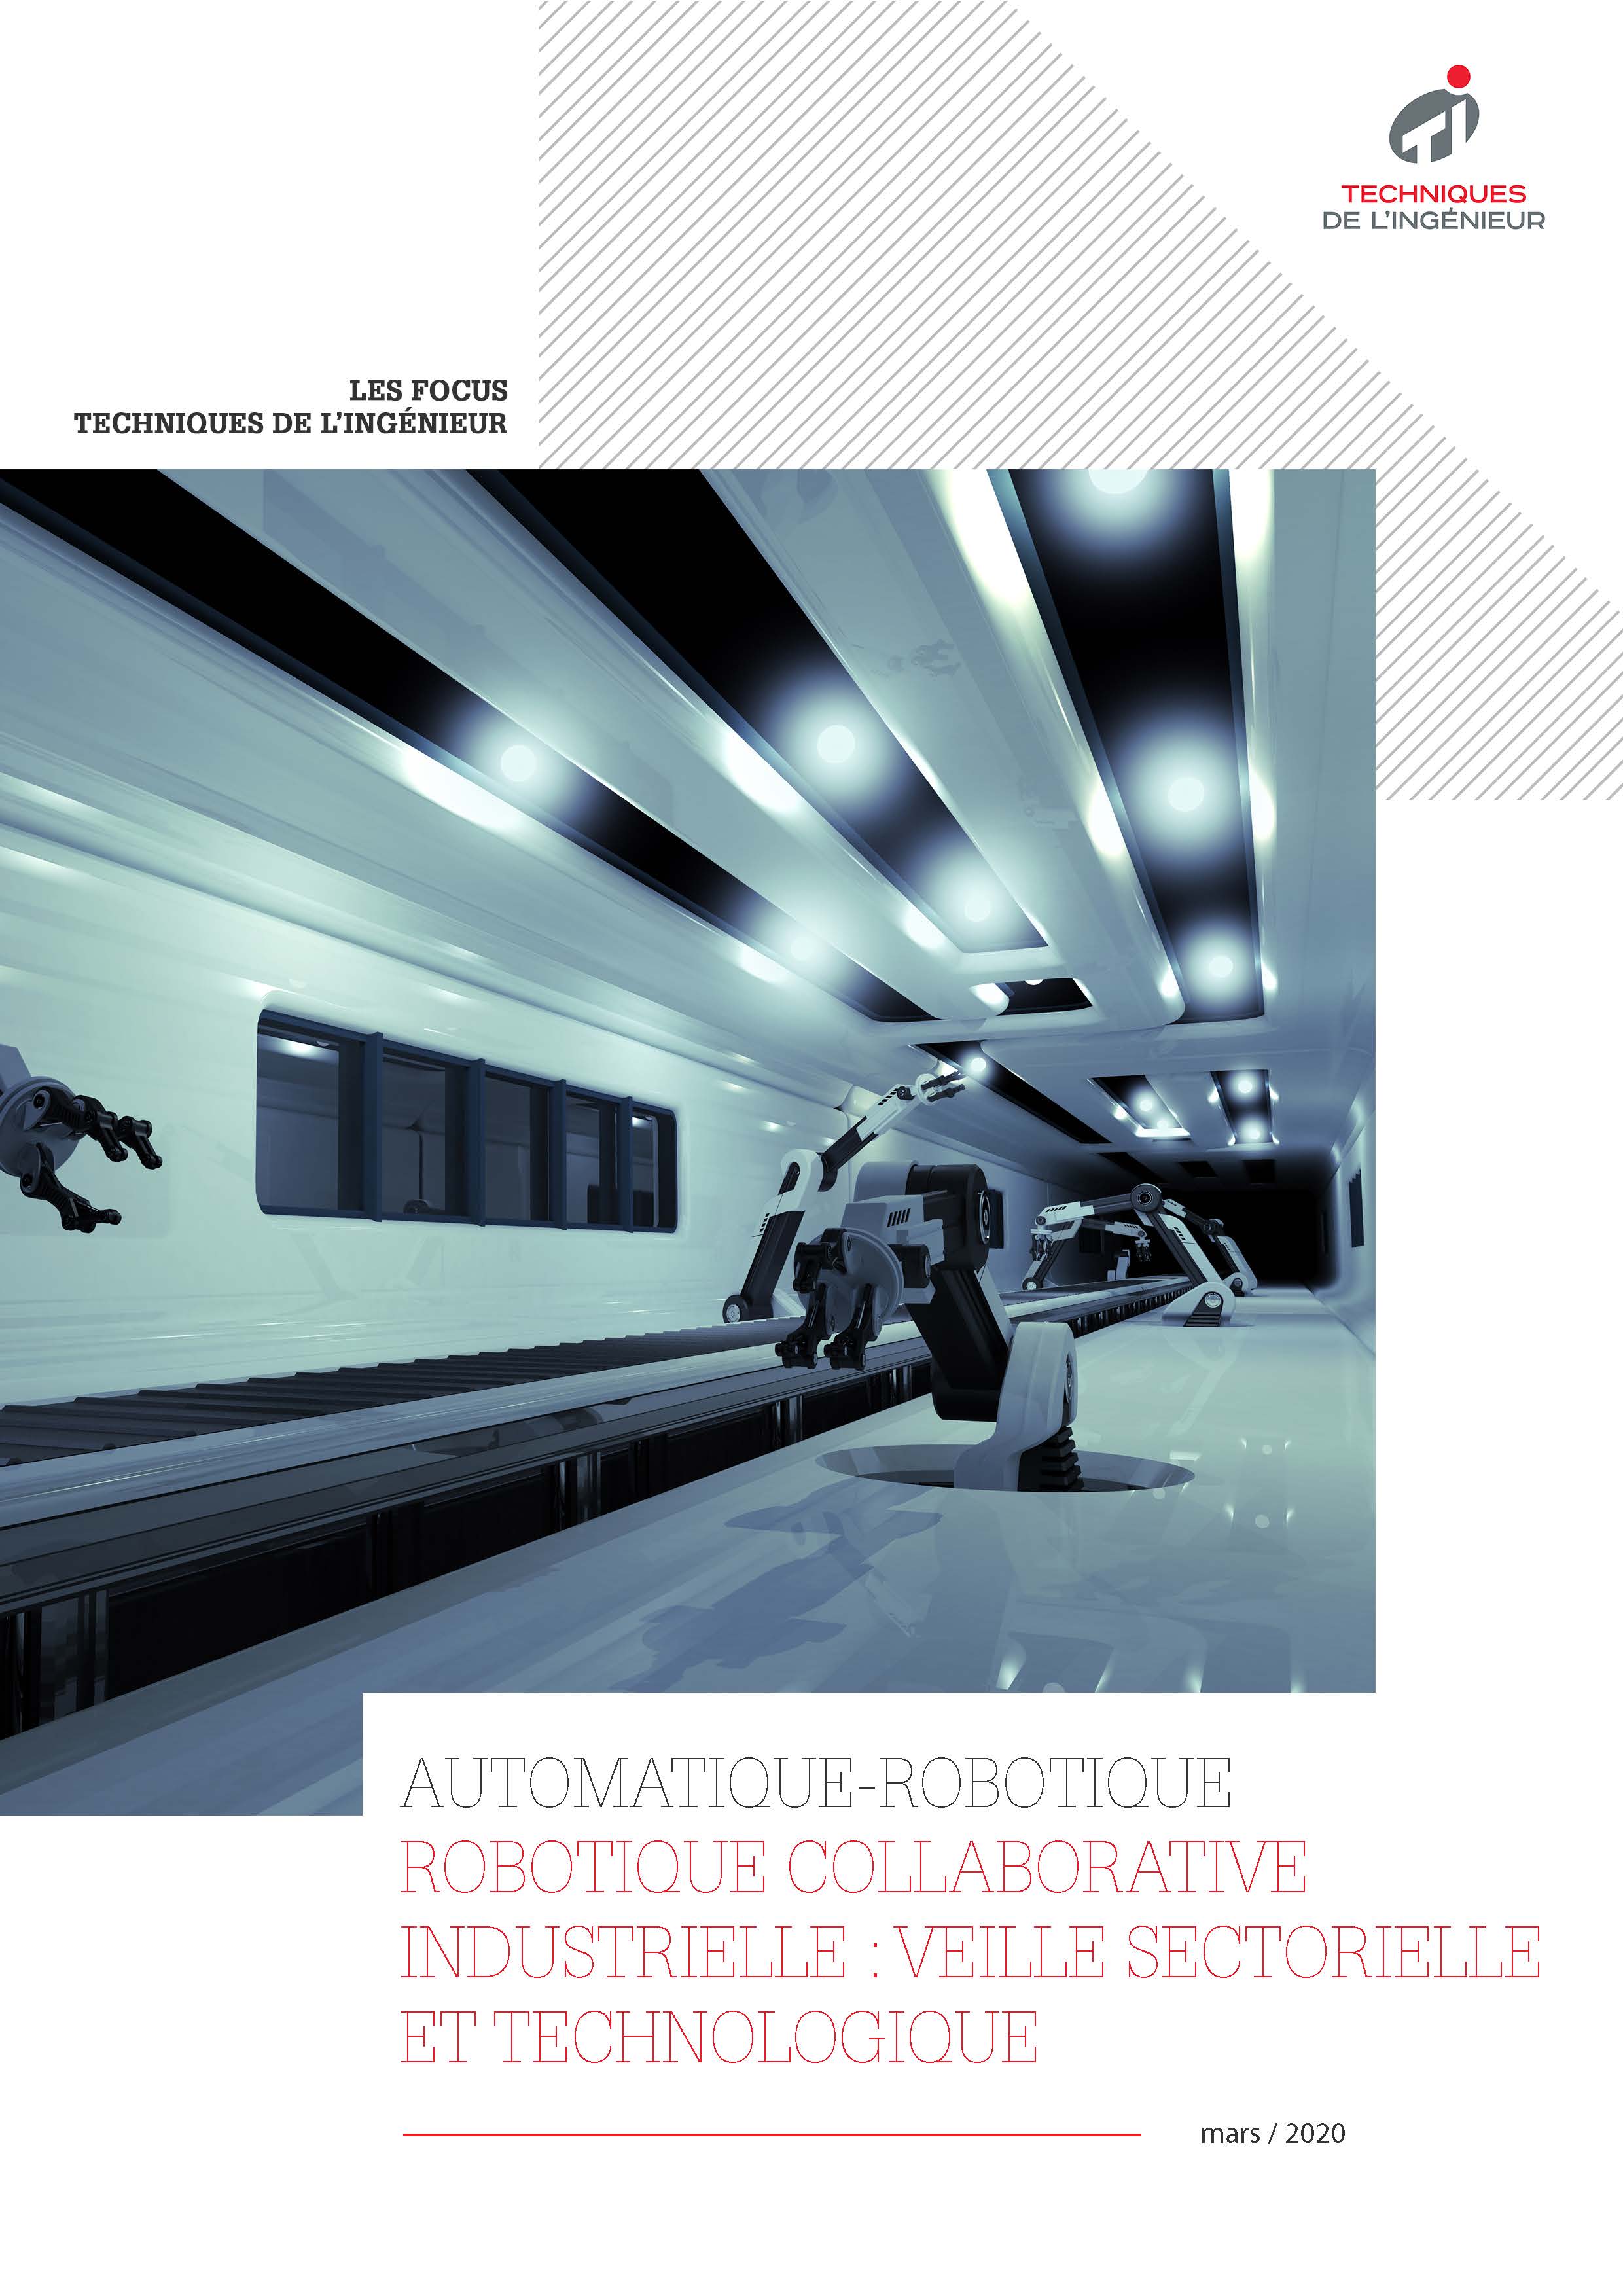 Robotique collaborative industrielle : veille sectorielle et technologique